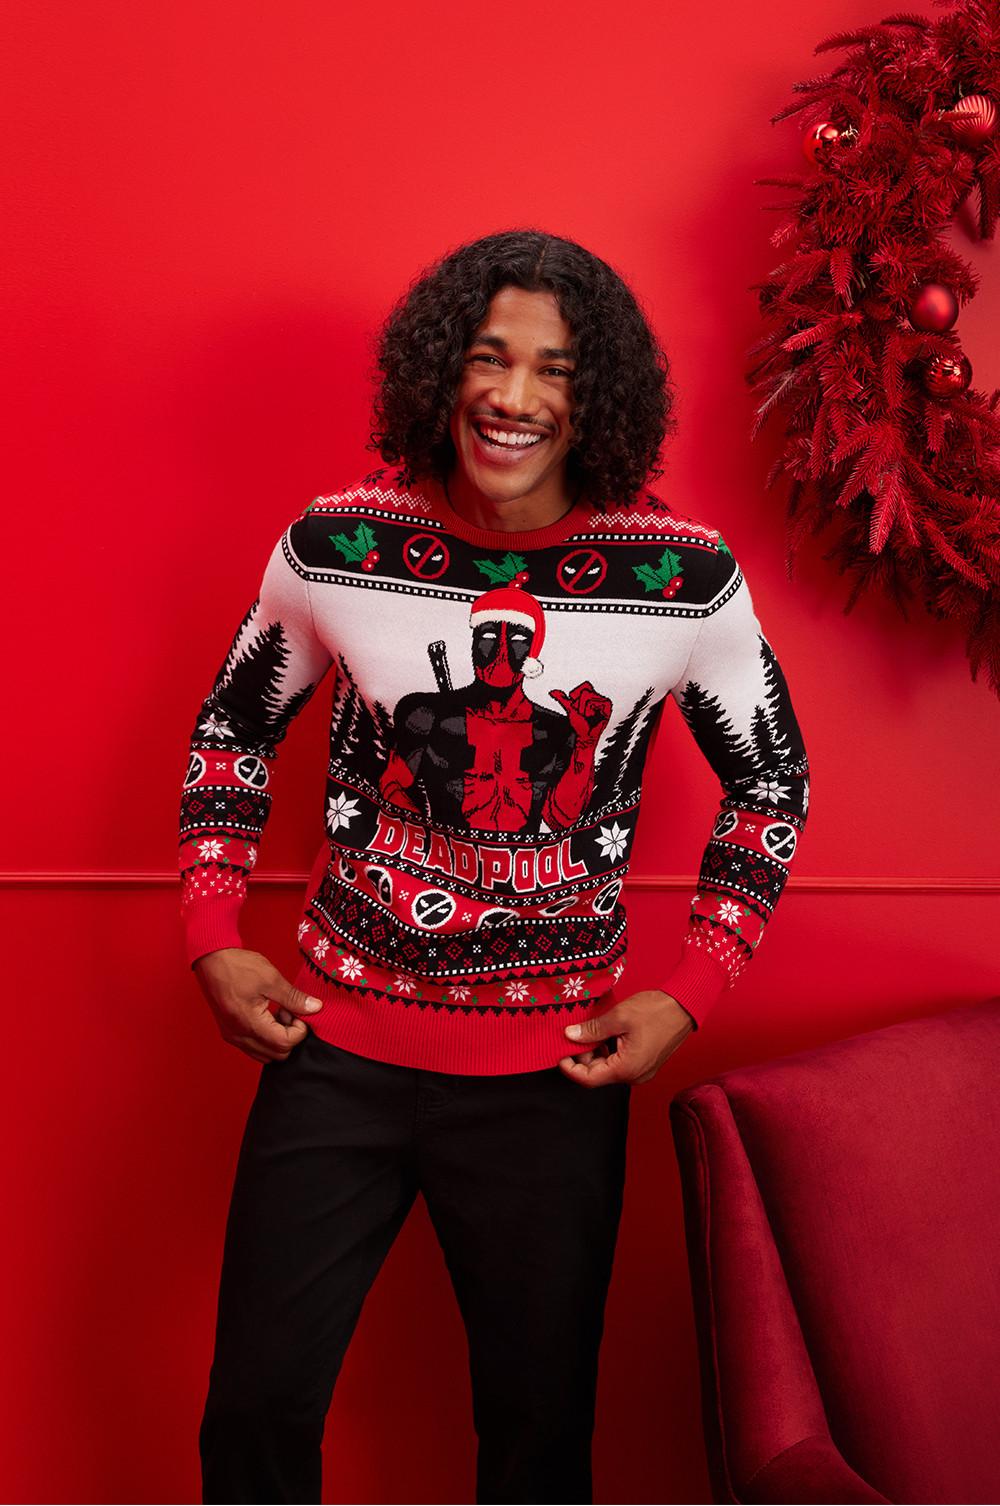 Il modello indossa un maglione natalizio a tema Deadpool